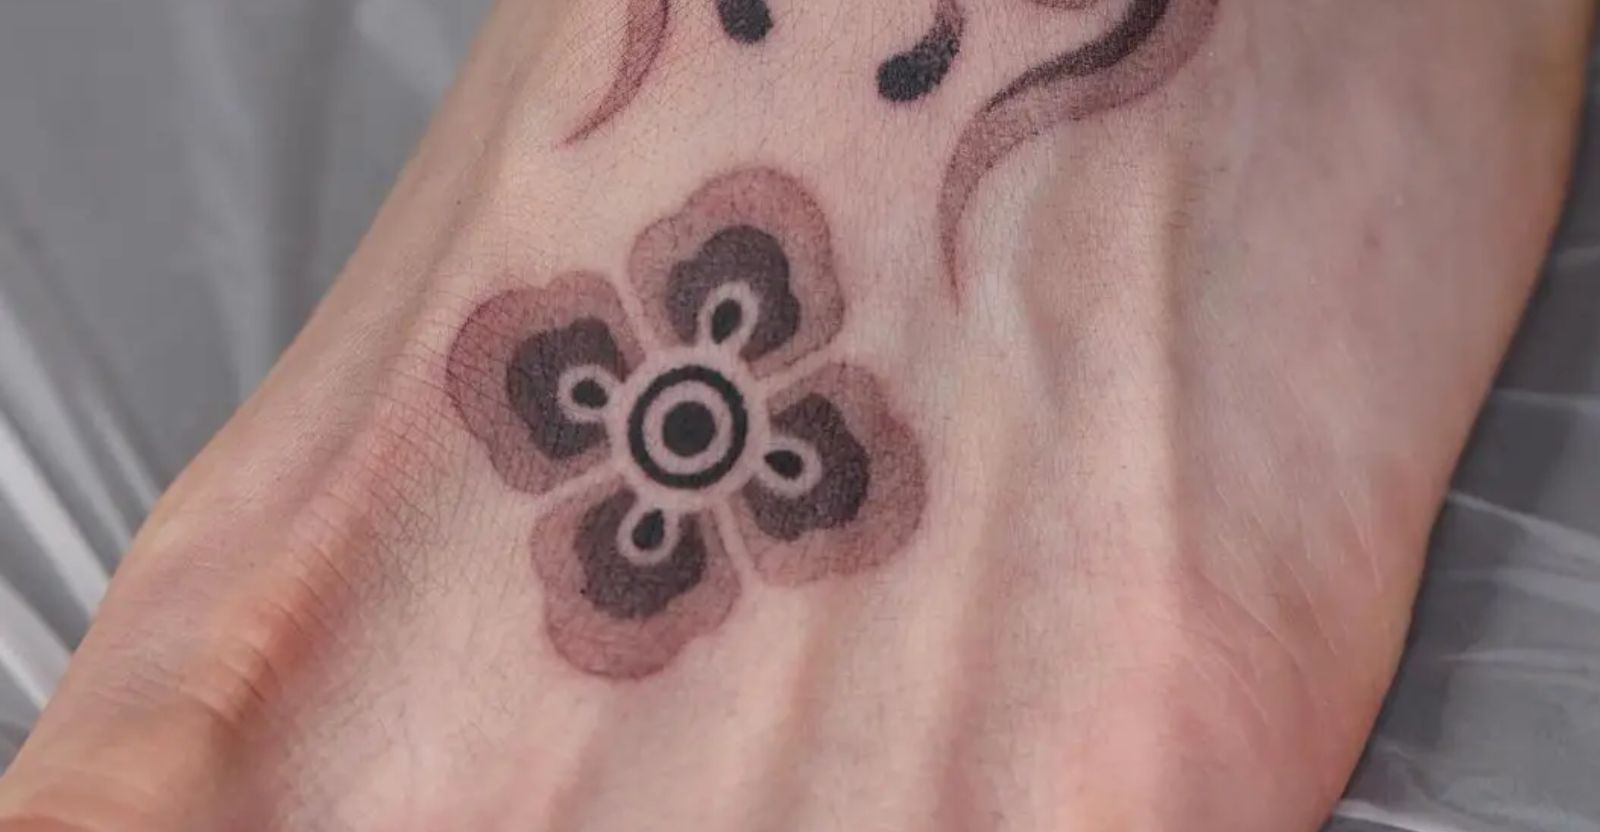 Lotus foot tattoo | Foot tattoos for women, Foot tattoos, Flower tattoo foot